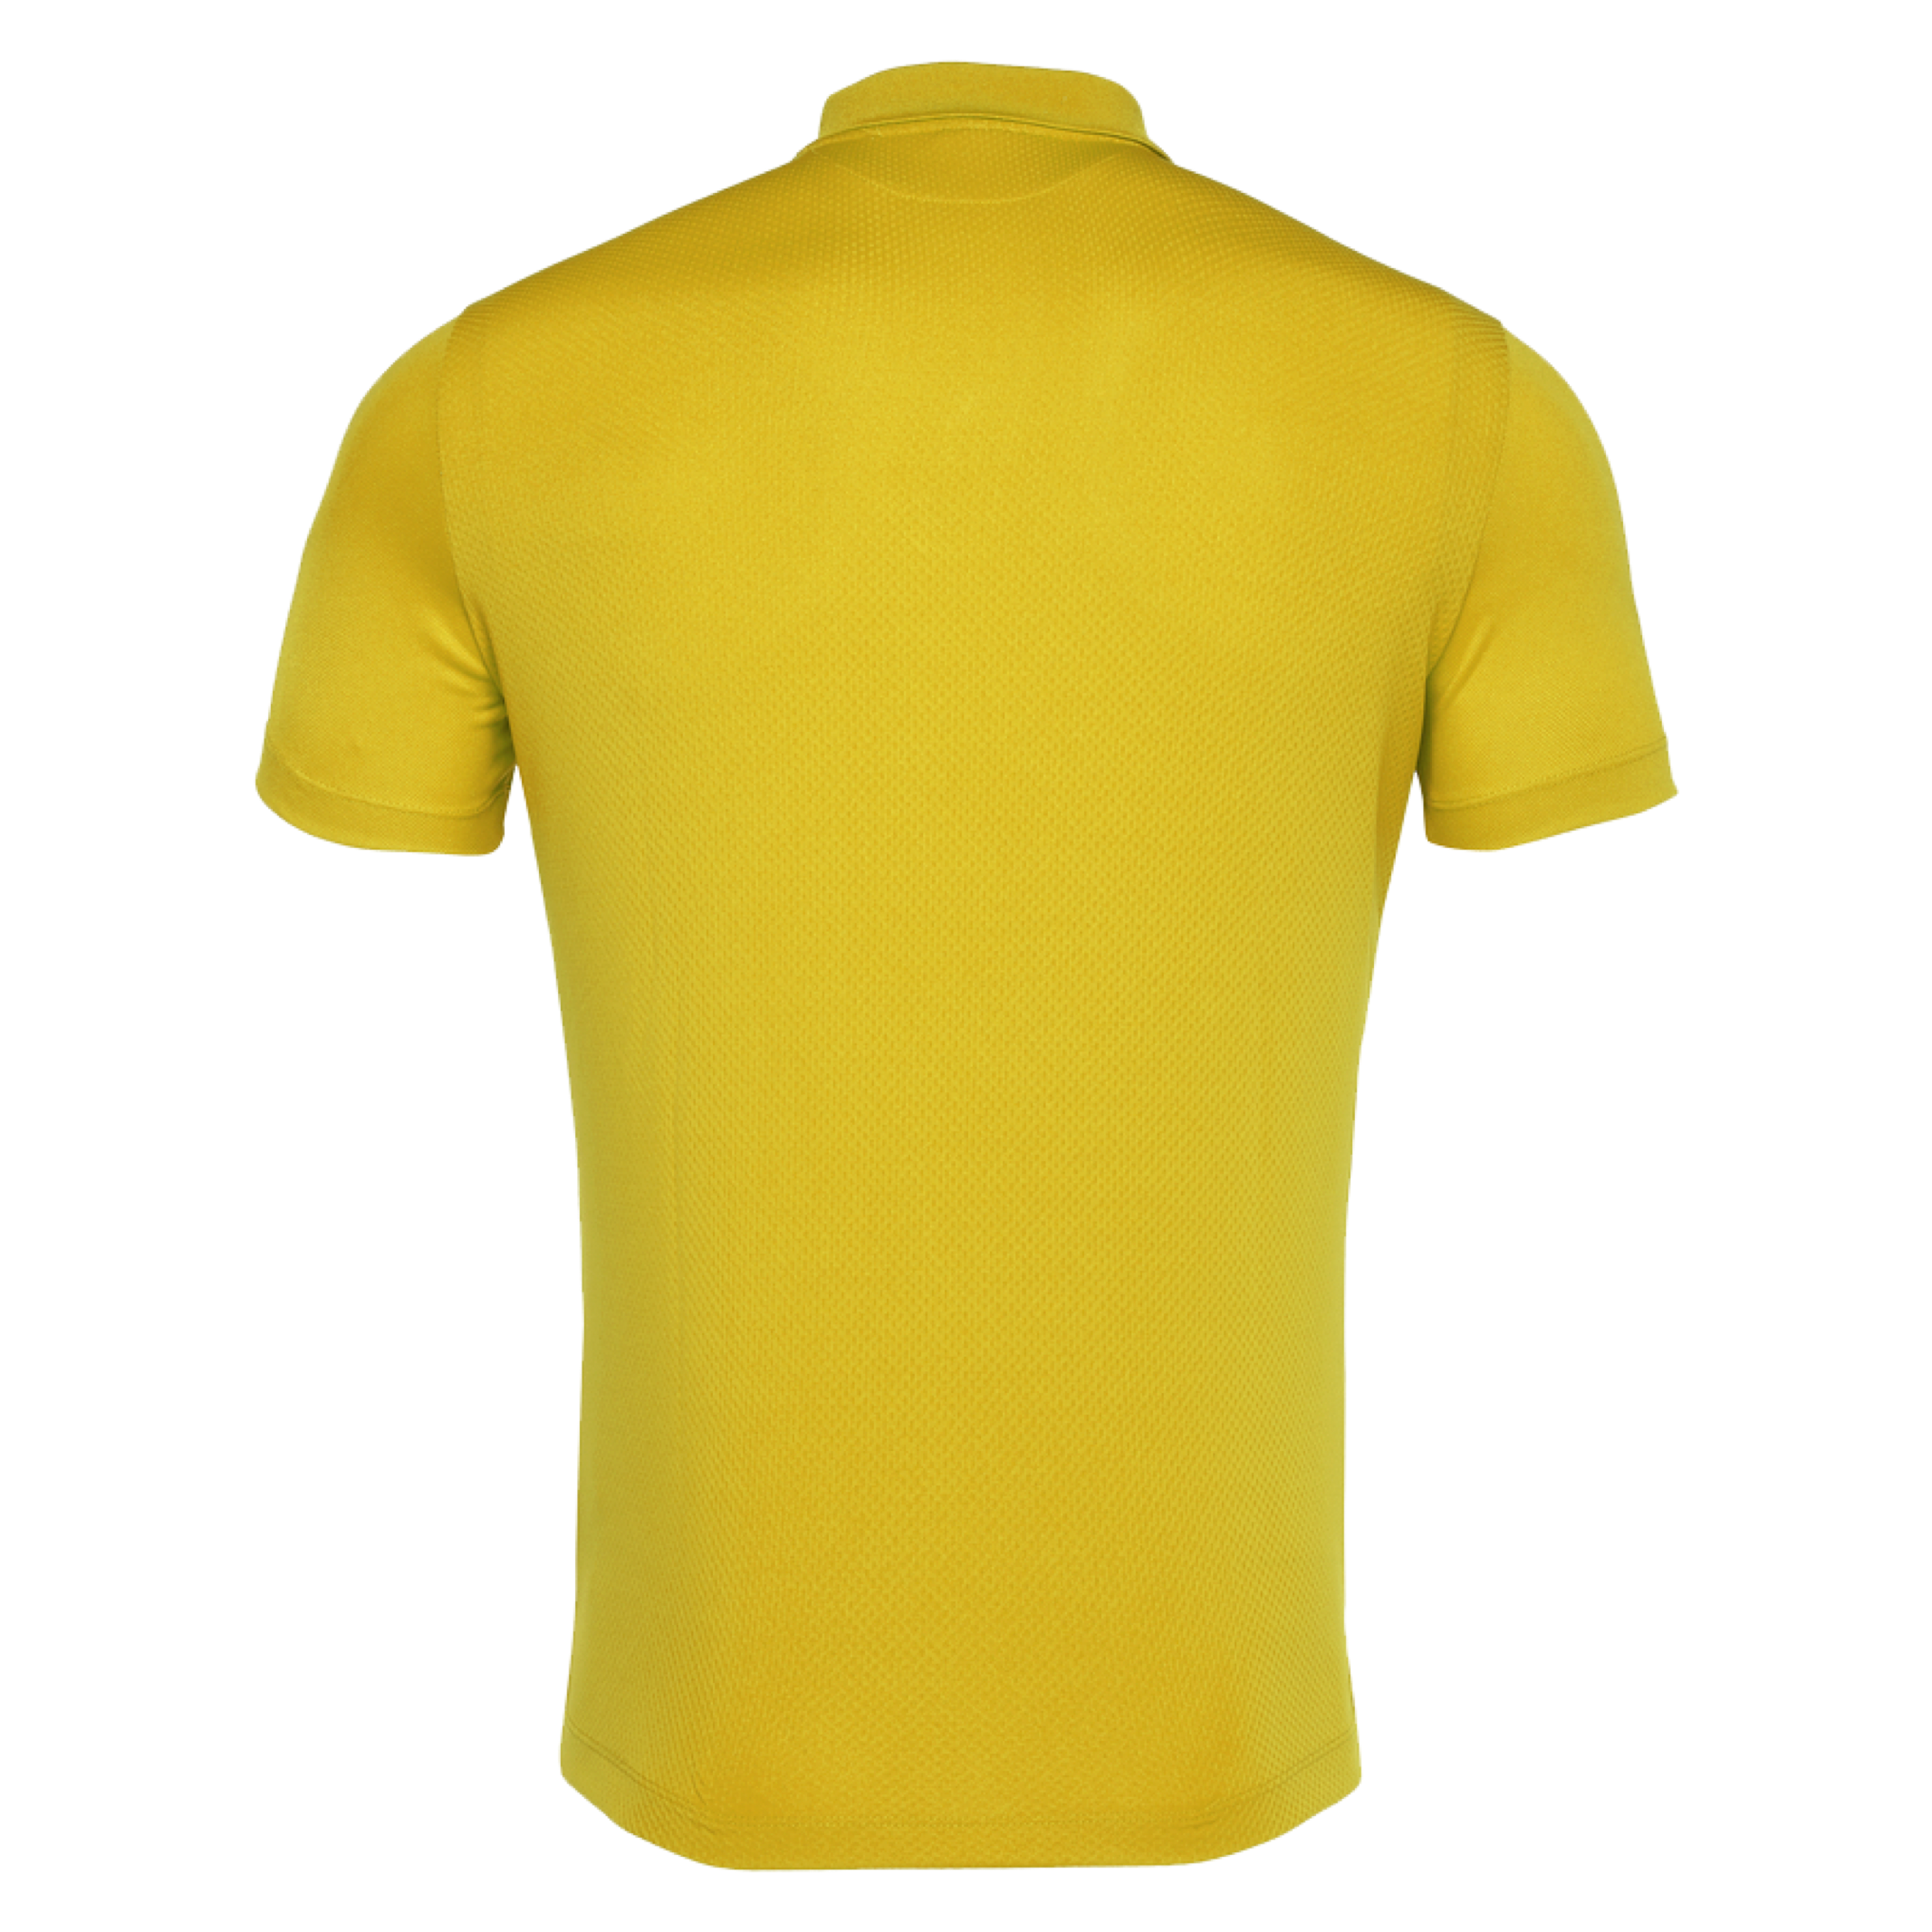 Birkalla Polo - Jumeirah (Yellow)